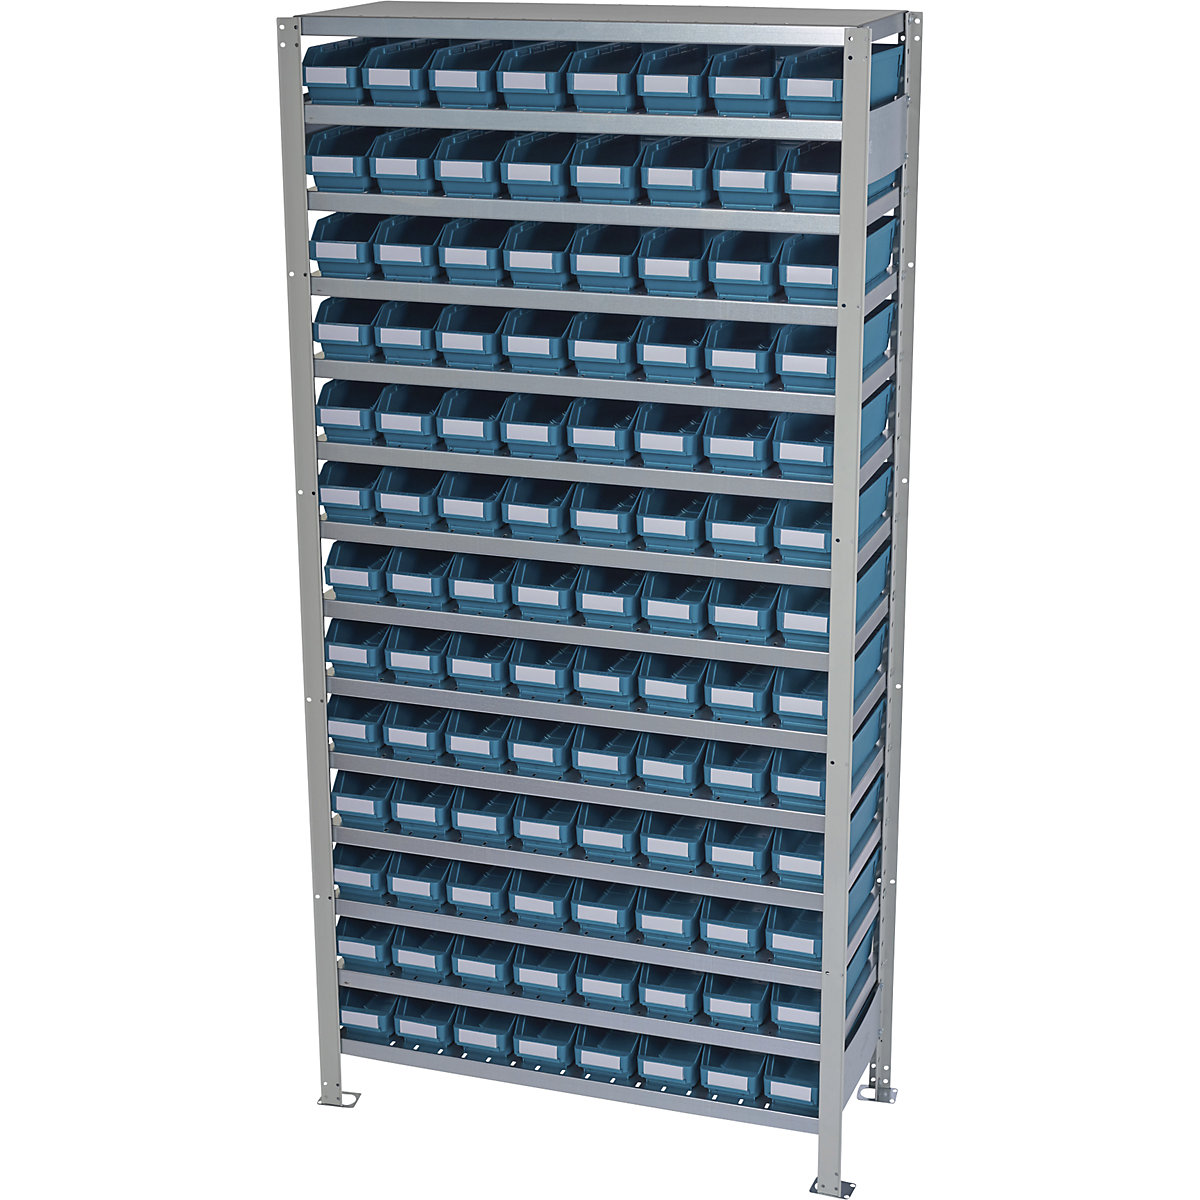 Estante de encaixar com caixas para estante – STEMO, altura da estante 2100 mm, estante básica, profundidade 400 mm, 104 caixas verdes-29